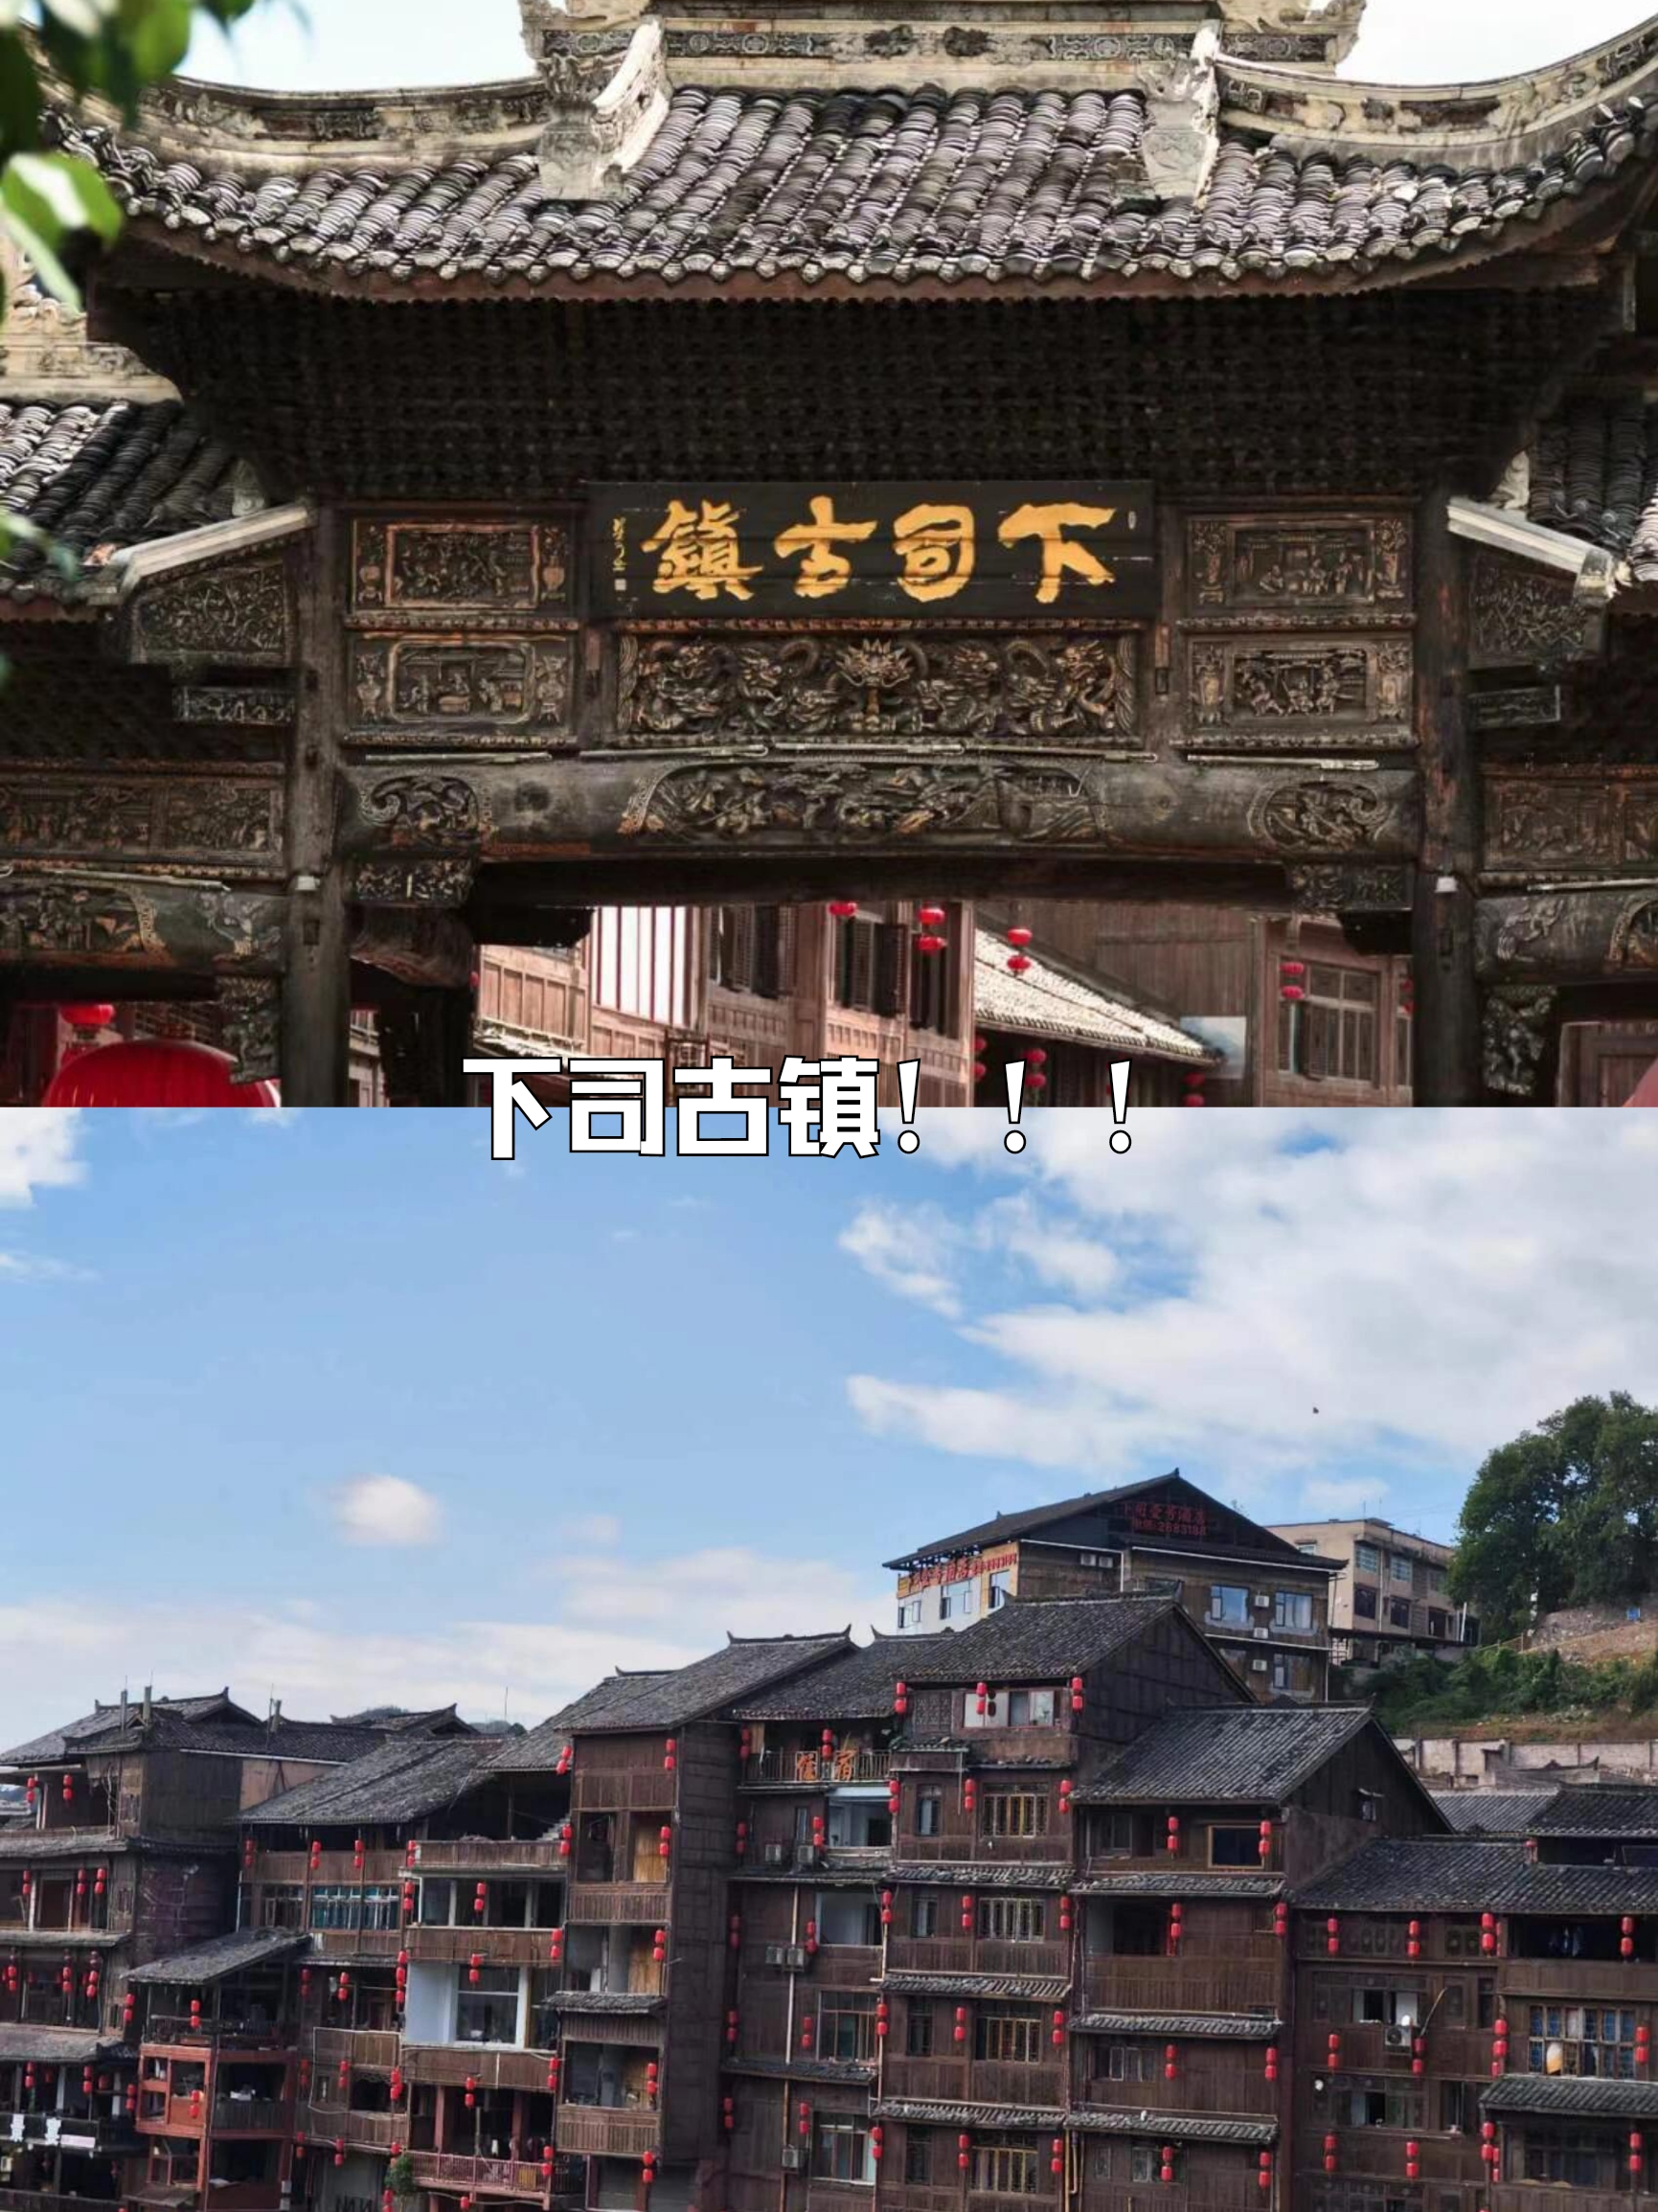 下司古镇，位于贵州省，是一个神秘而充满魅力的宝藏。